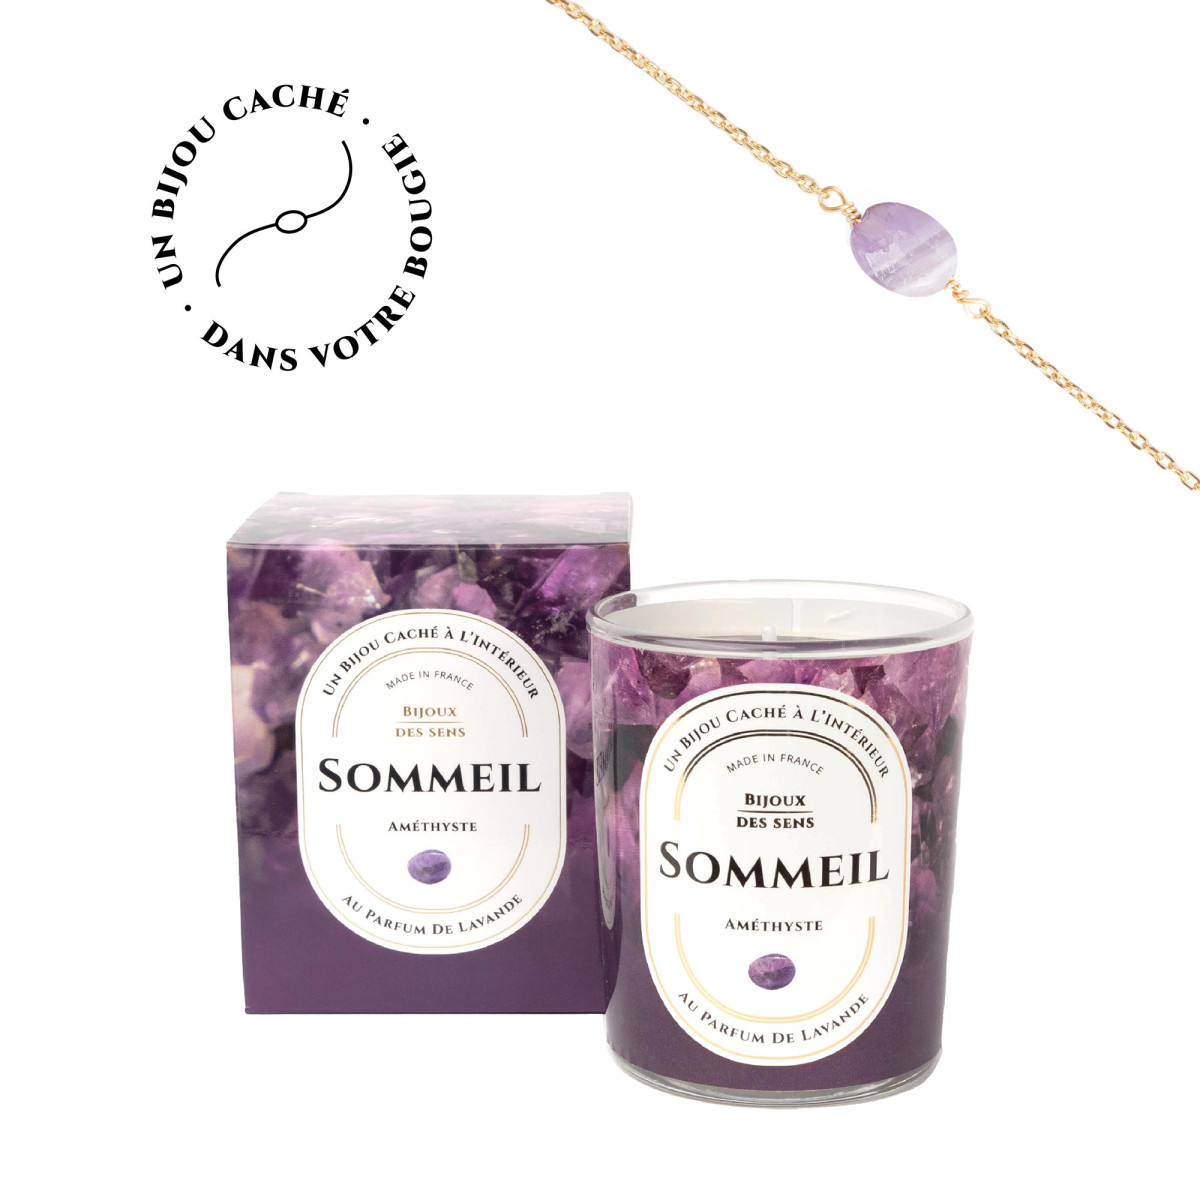 Sommeil - Bougie Fragrance Lavande et Bracelet Doré Améthyste